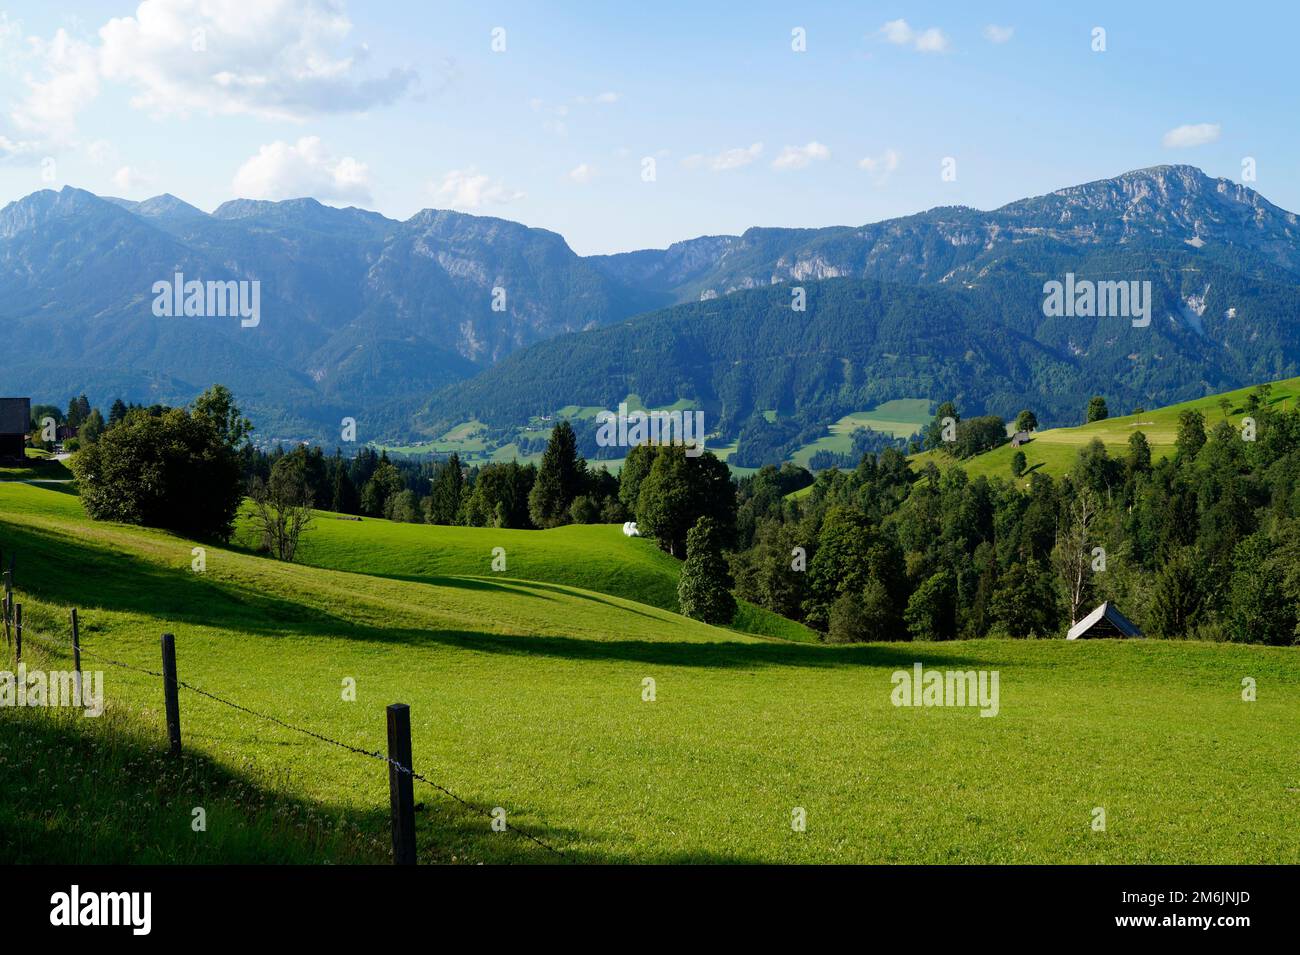 Un bel villaggio alpino nella verde valle alpina delle Alpi austriache della regione di Schladming-Dachstein (Steiermark o Stiria, Austria) Foto Stock